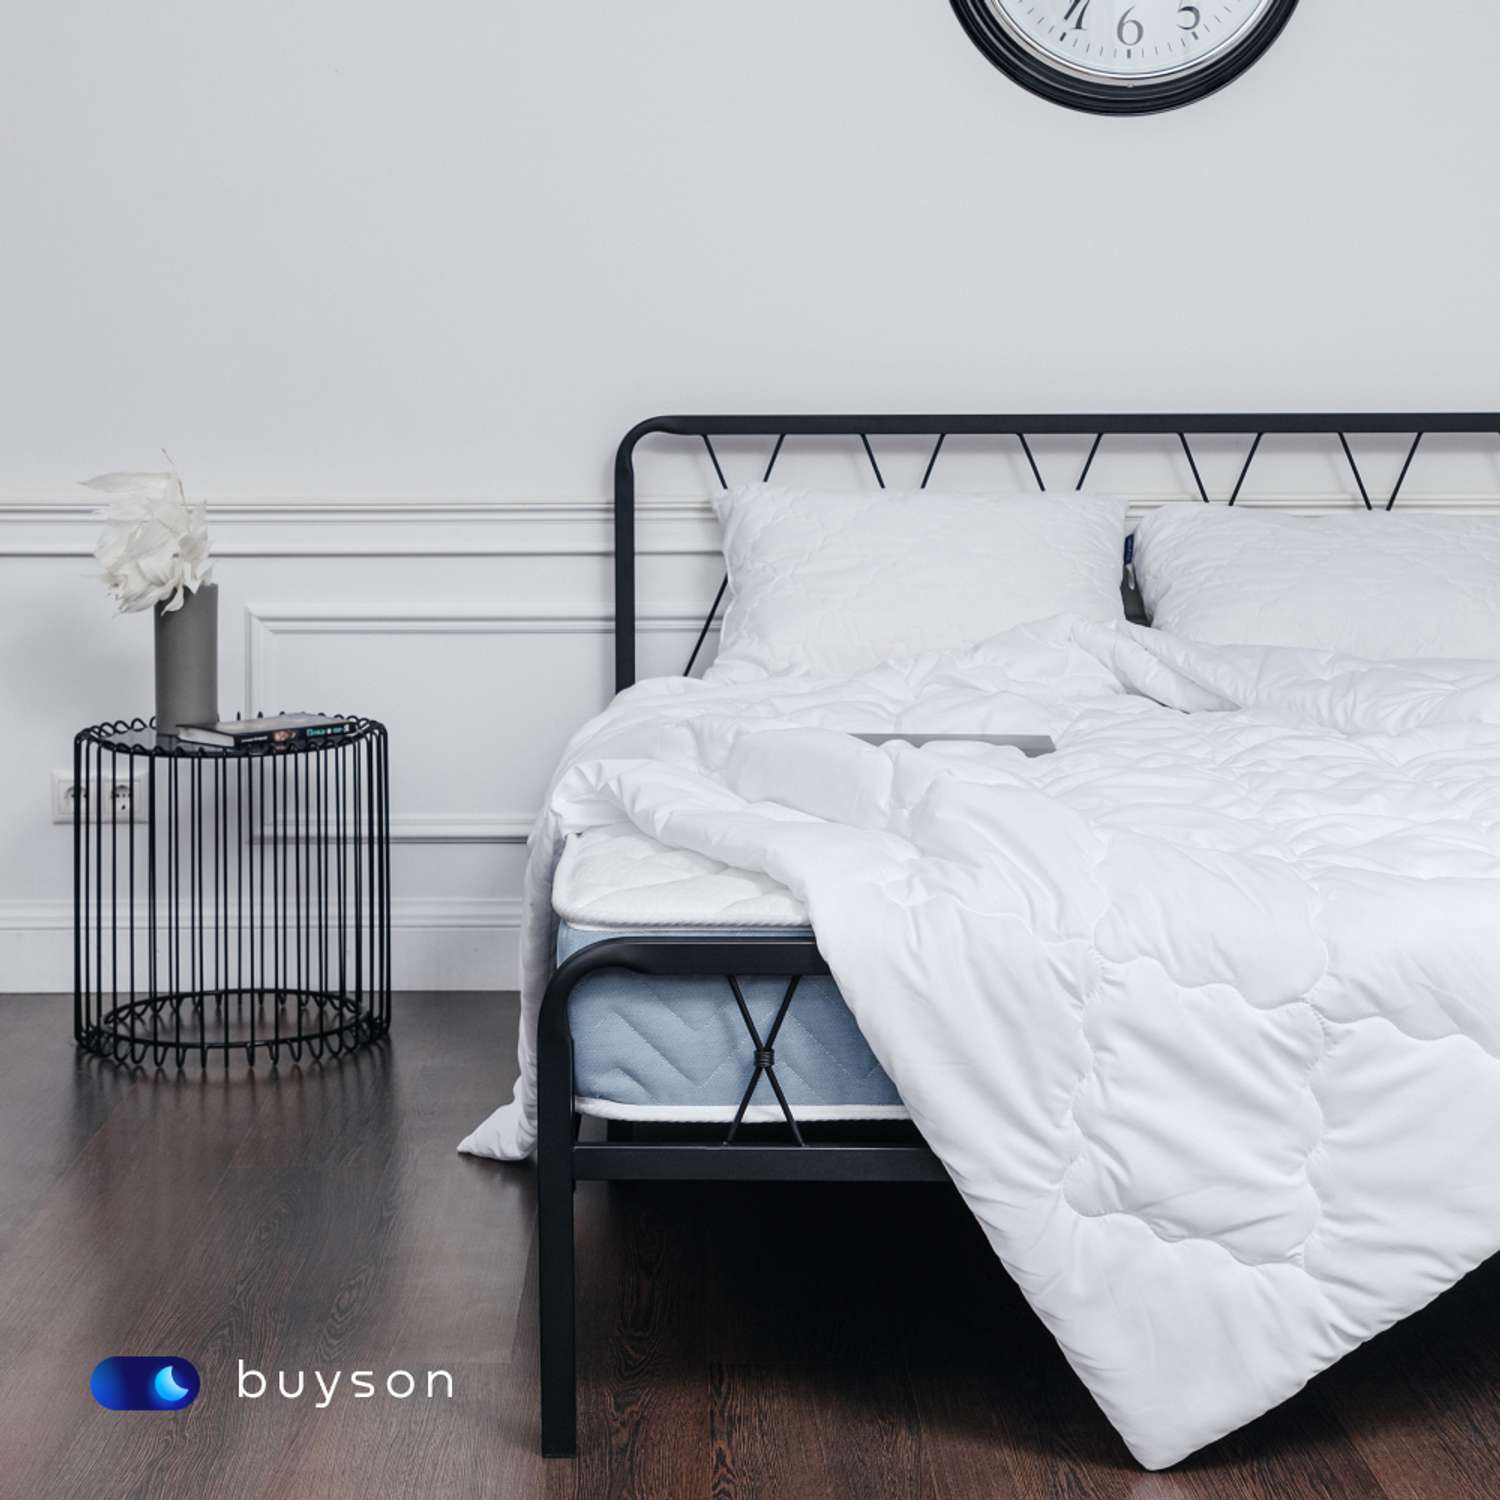 Одеяло buyson BuyRelax 200х220 см евро 2-х спальное всесезонное с наполнителем полиэфир - фото 7